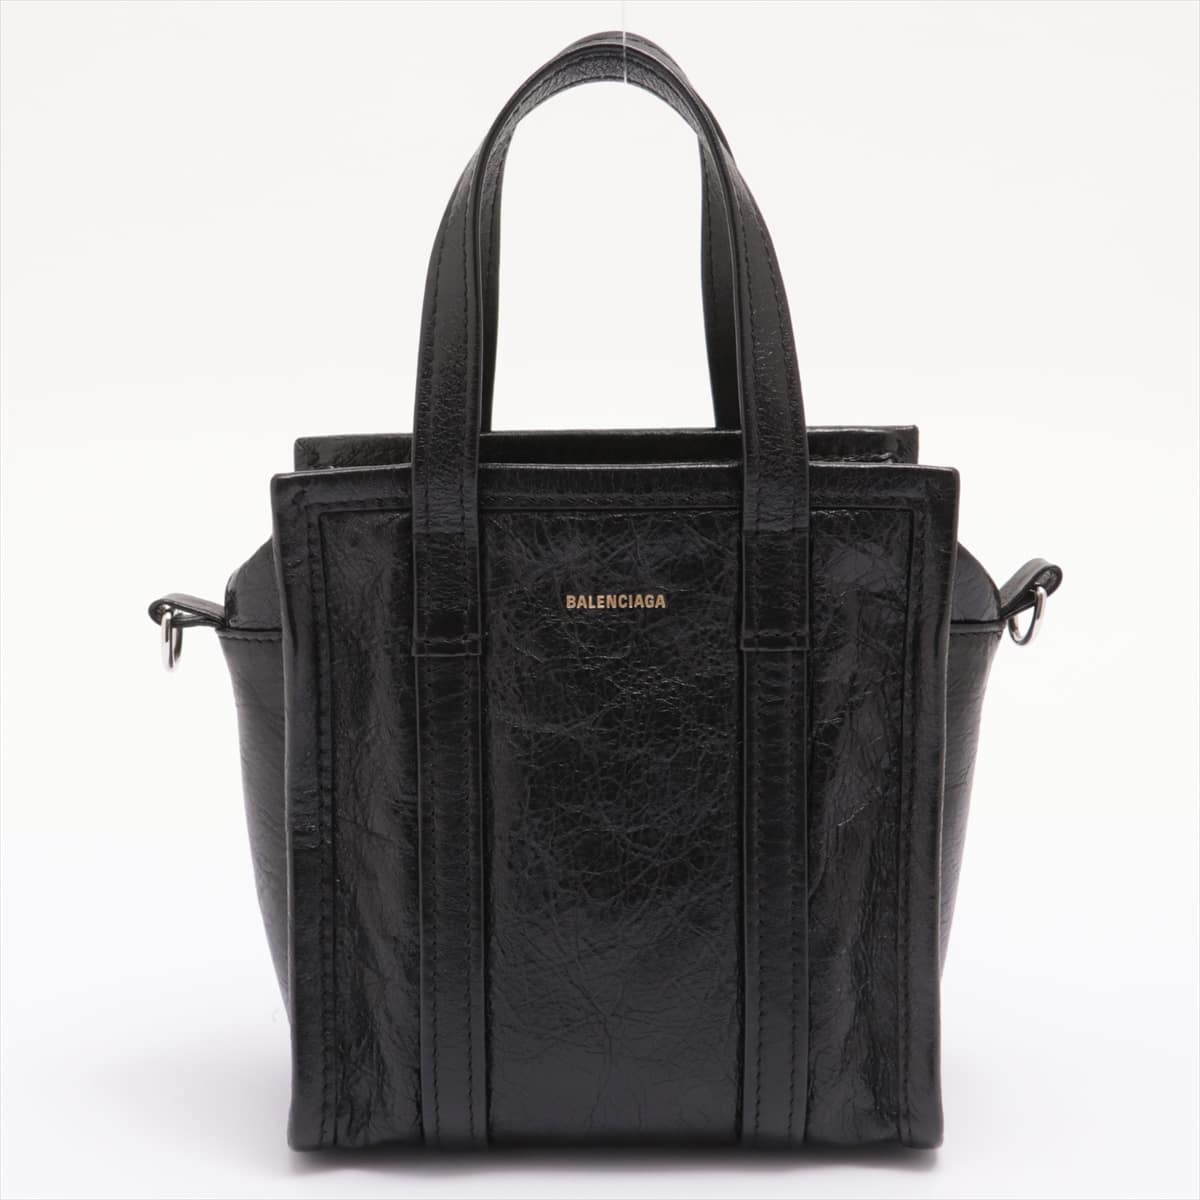 Balenciaga Bazal shopper XXS Leather 2way handbag Black 513988